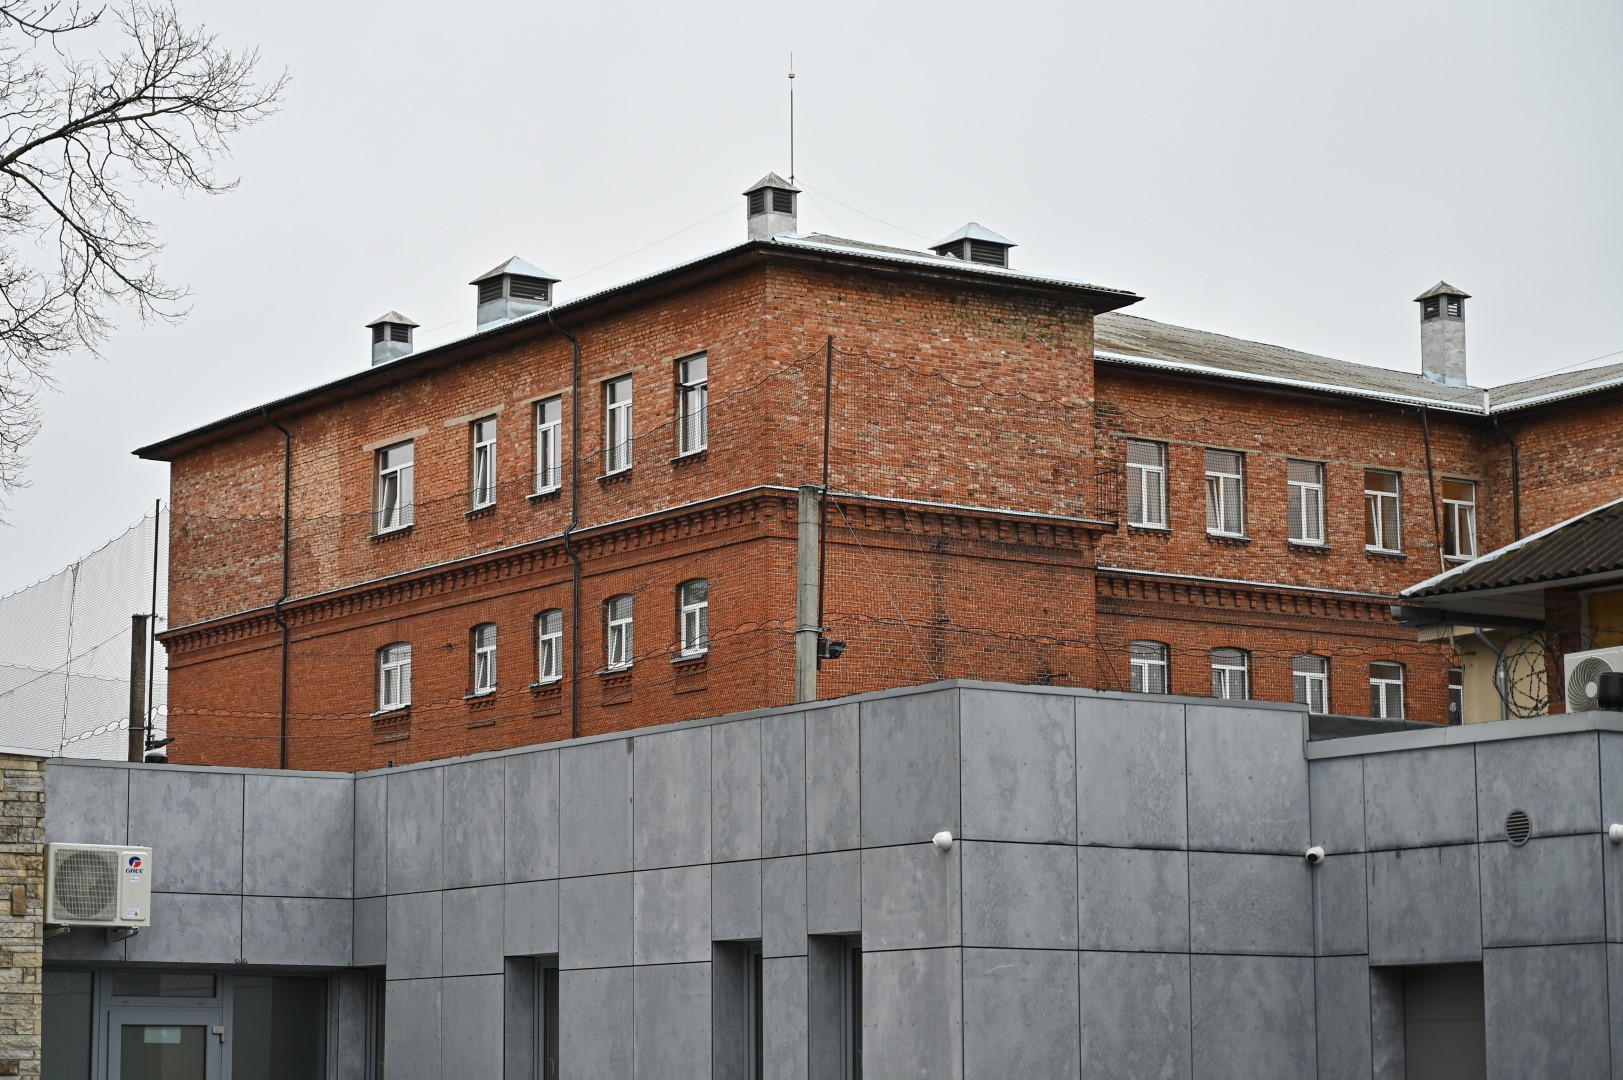 Panevėžio kalėjimas – viena seniausių įkalinimo įstaigų Lietuvoje. Pirmasis kalėjimas šiame mieste atsirado dar XVI amžiuje.